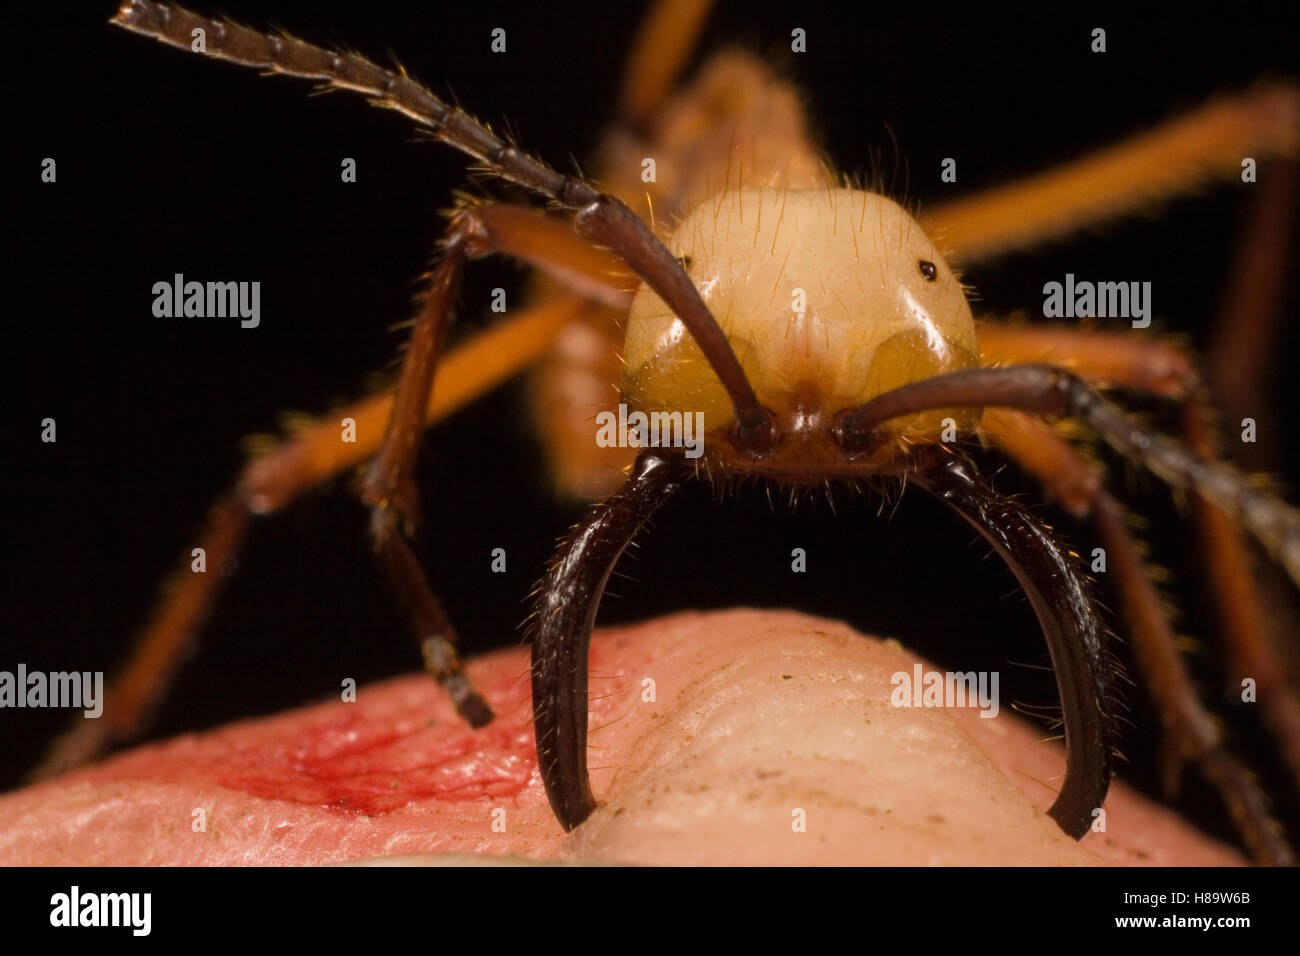 Ejército Eciton hamatum (Ant) principales trabajador mordiendo el dedo mientras las mandíbulas escozor que gira el dedo rojo. También se denomina Foto de stock